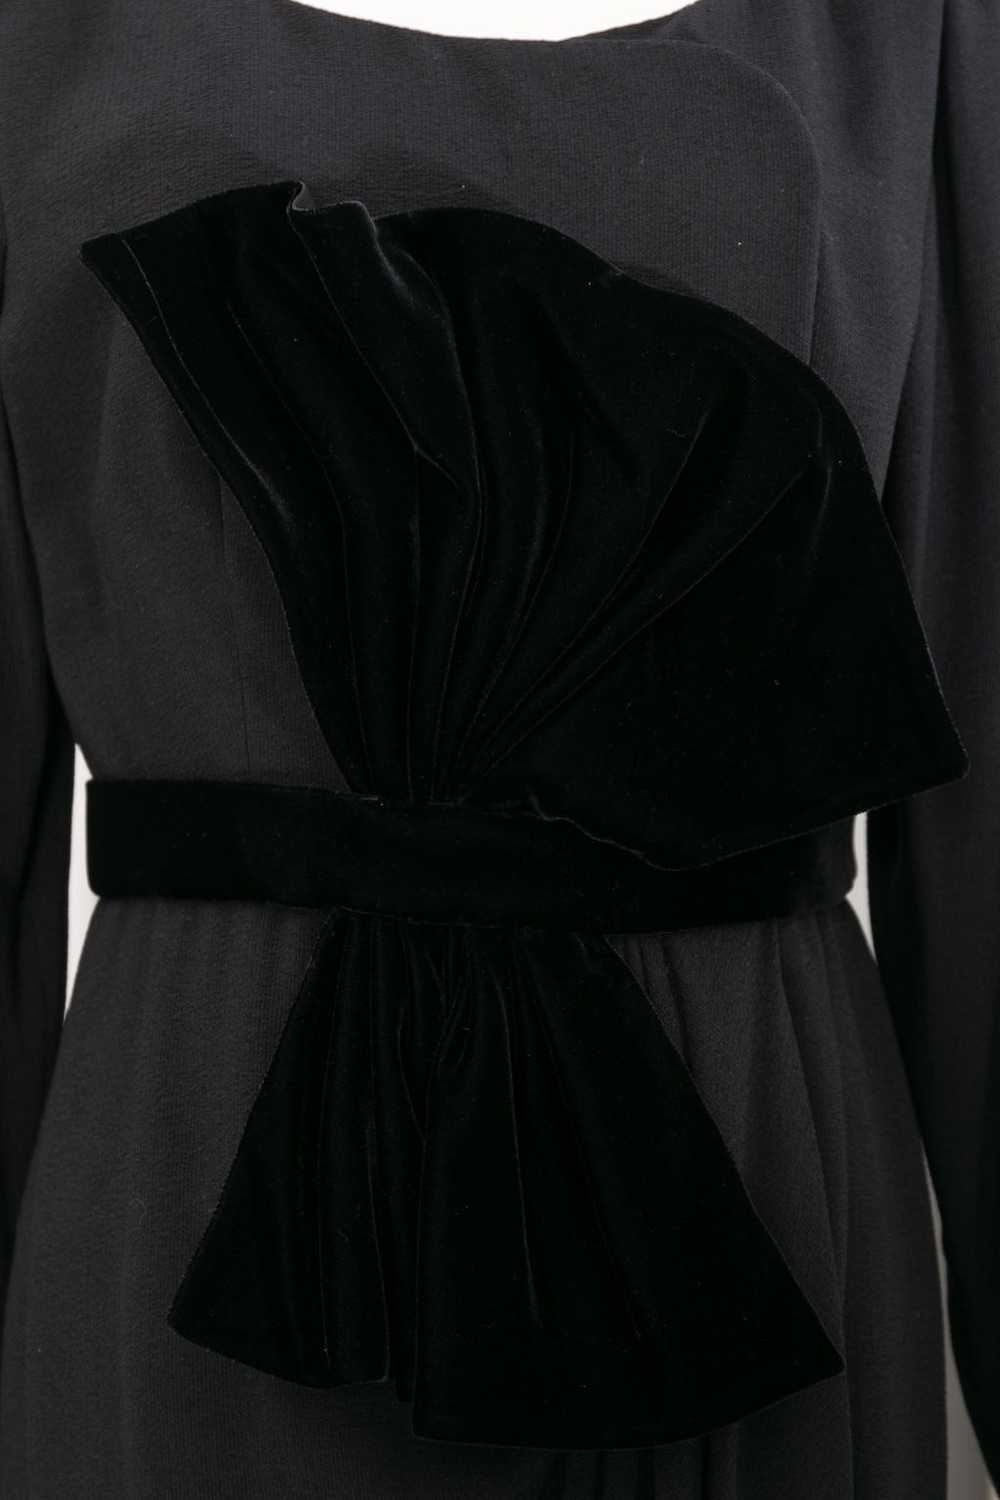 Yves saint Laurent Haute Couture black dress - image 5